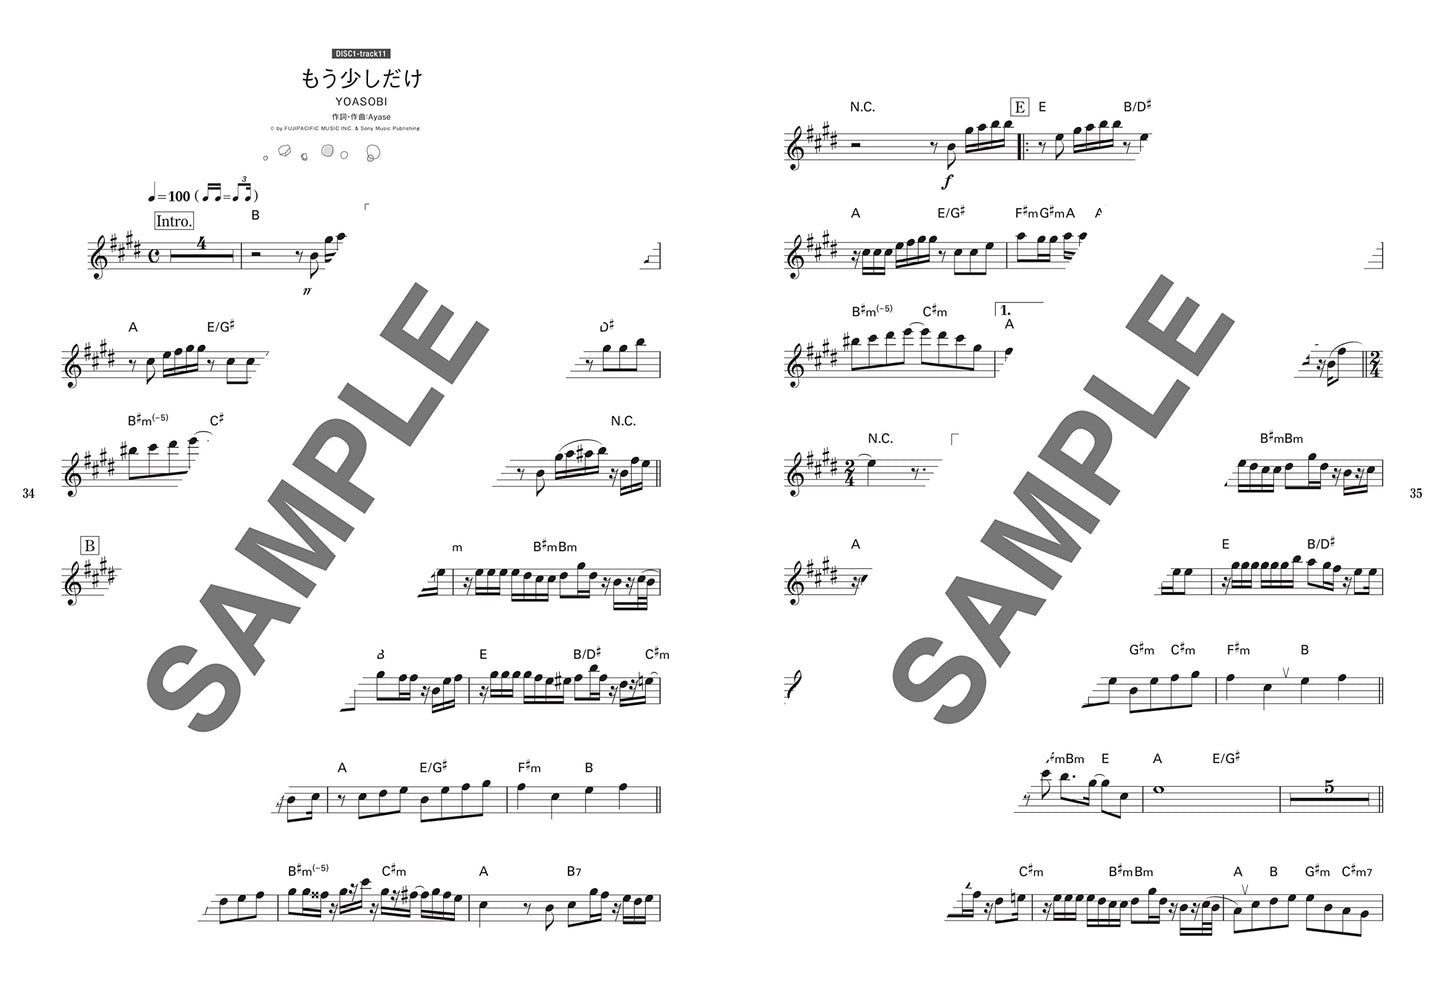 Neues und Standard-J-POP-Notenbuch für Altsaxophon (obere Mittelstufe) mit CD (Backing Tracks).